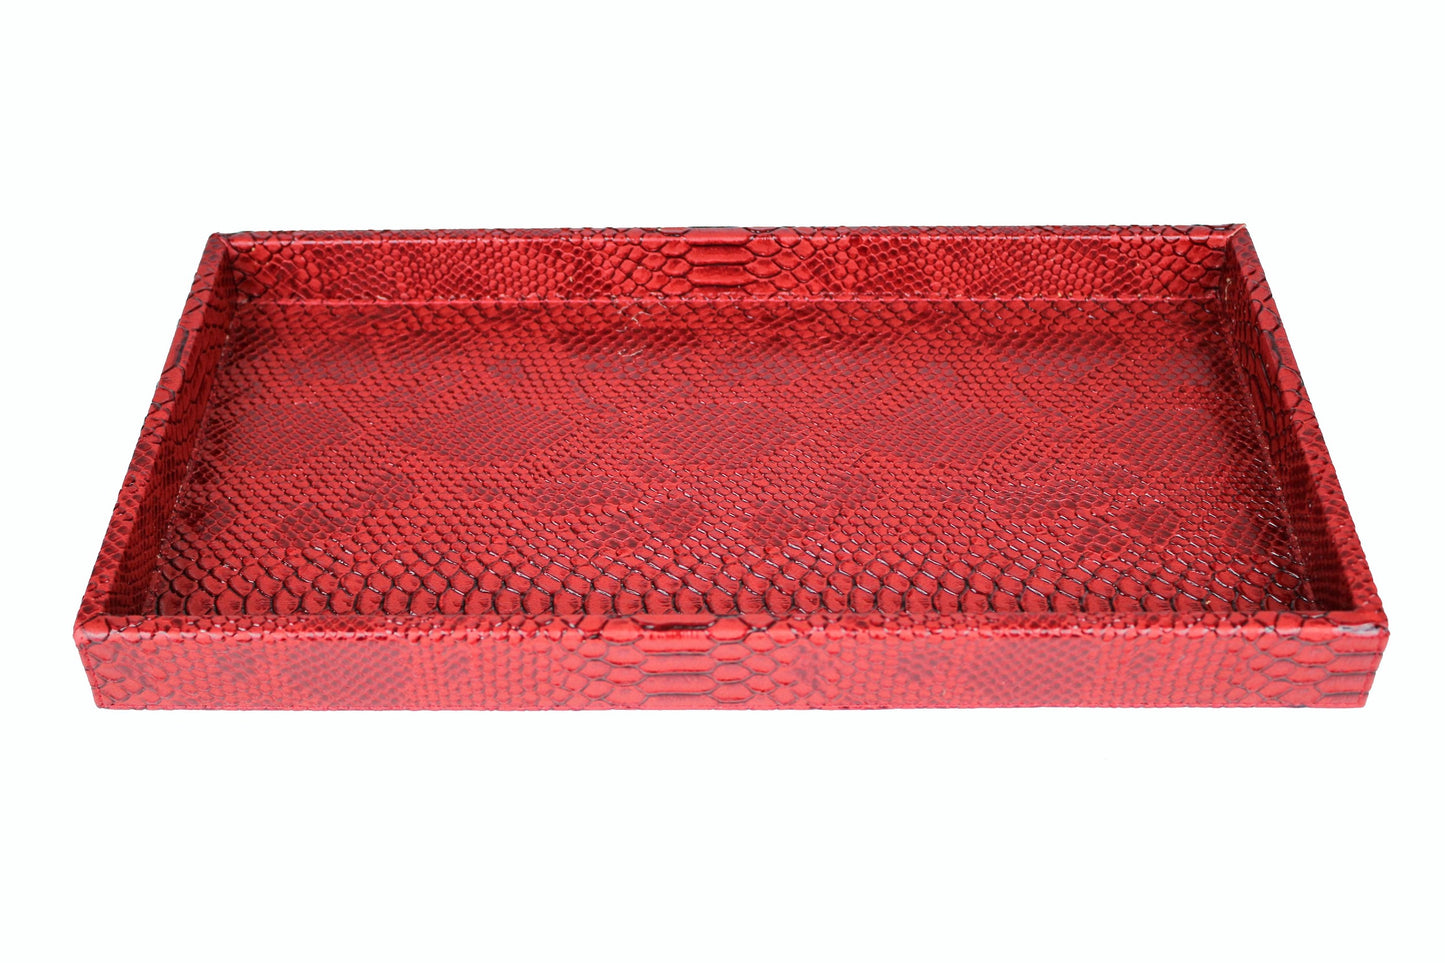 flaches Tablett Vanity von Signature Home Collection in leuchtendem Schlagenleder in rot